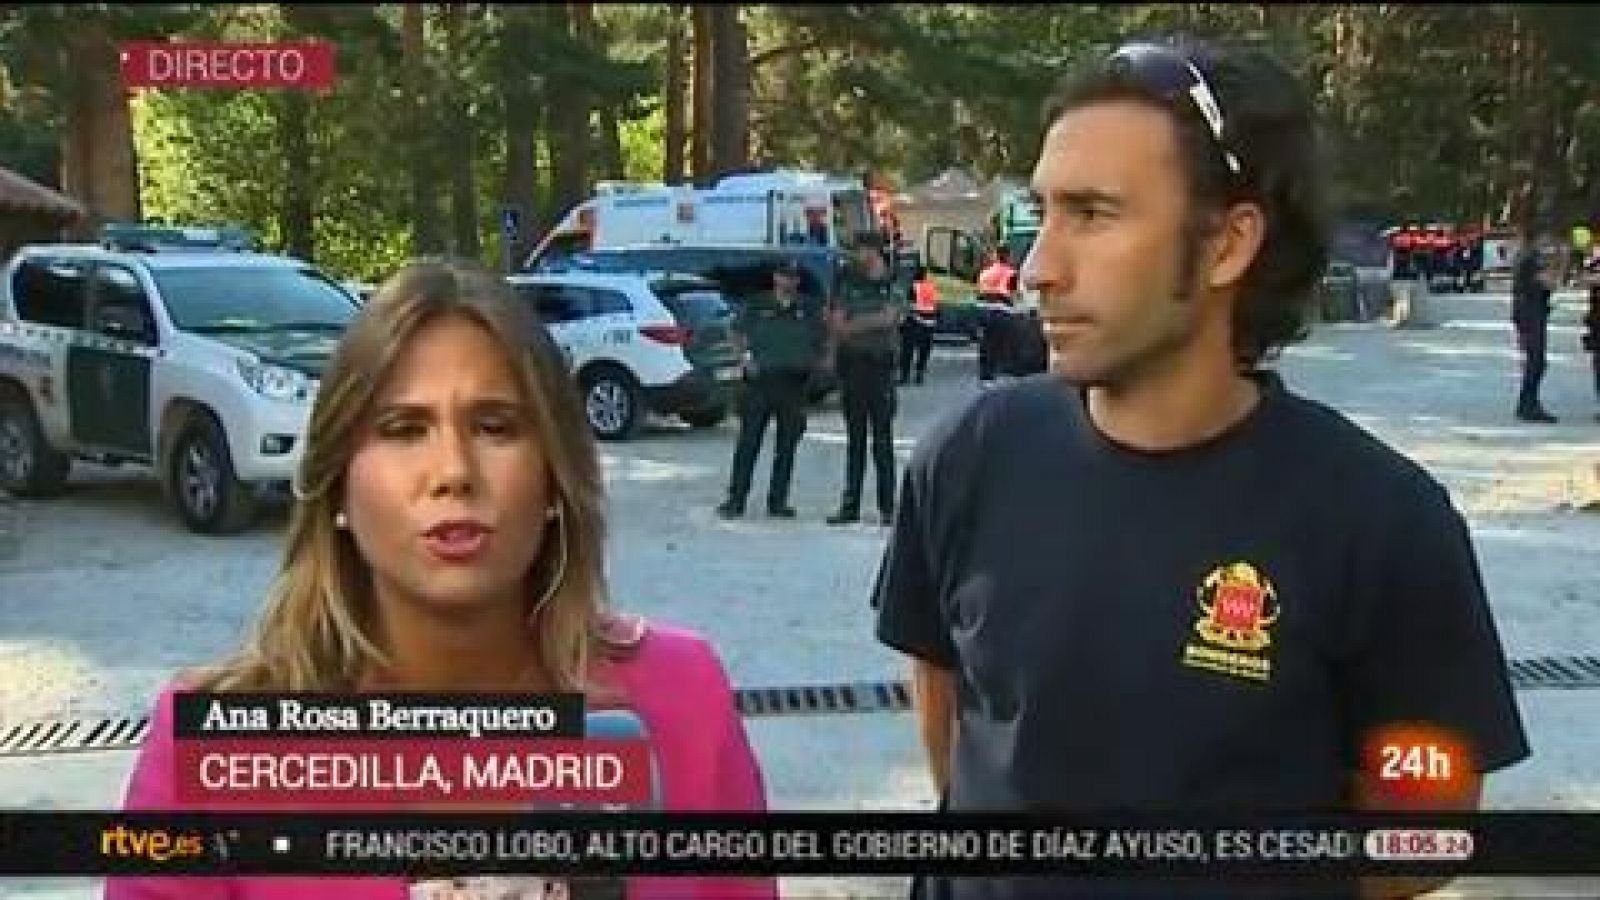 Oficial de bomberos de la Comunidad de Madrid, sobre Blanca Fernández Ochoa: "Todavía esperamos que pueda estar viva" -RTVE.es